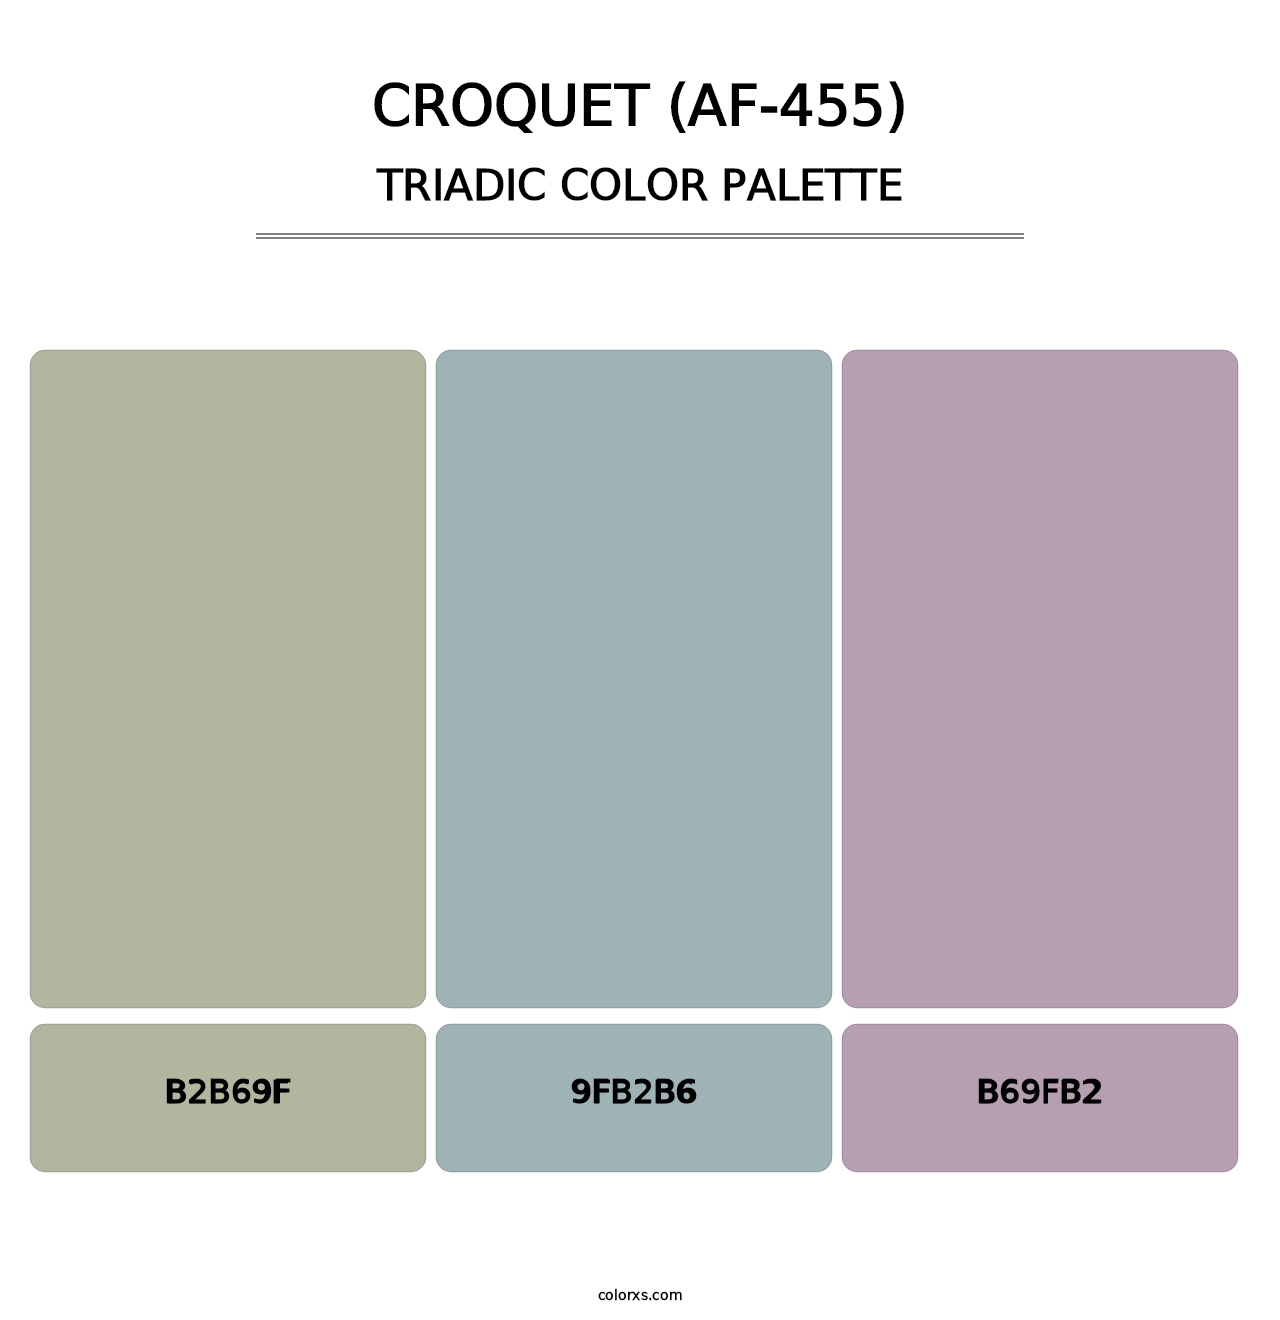 Croquet (AF-455) - Triadic Color Palette